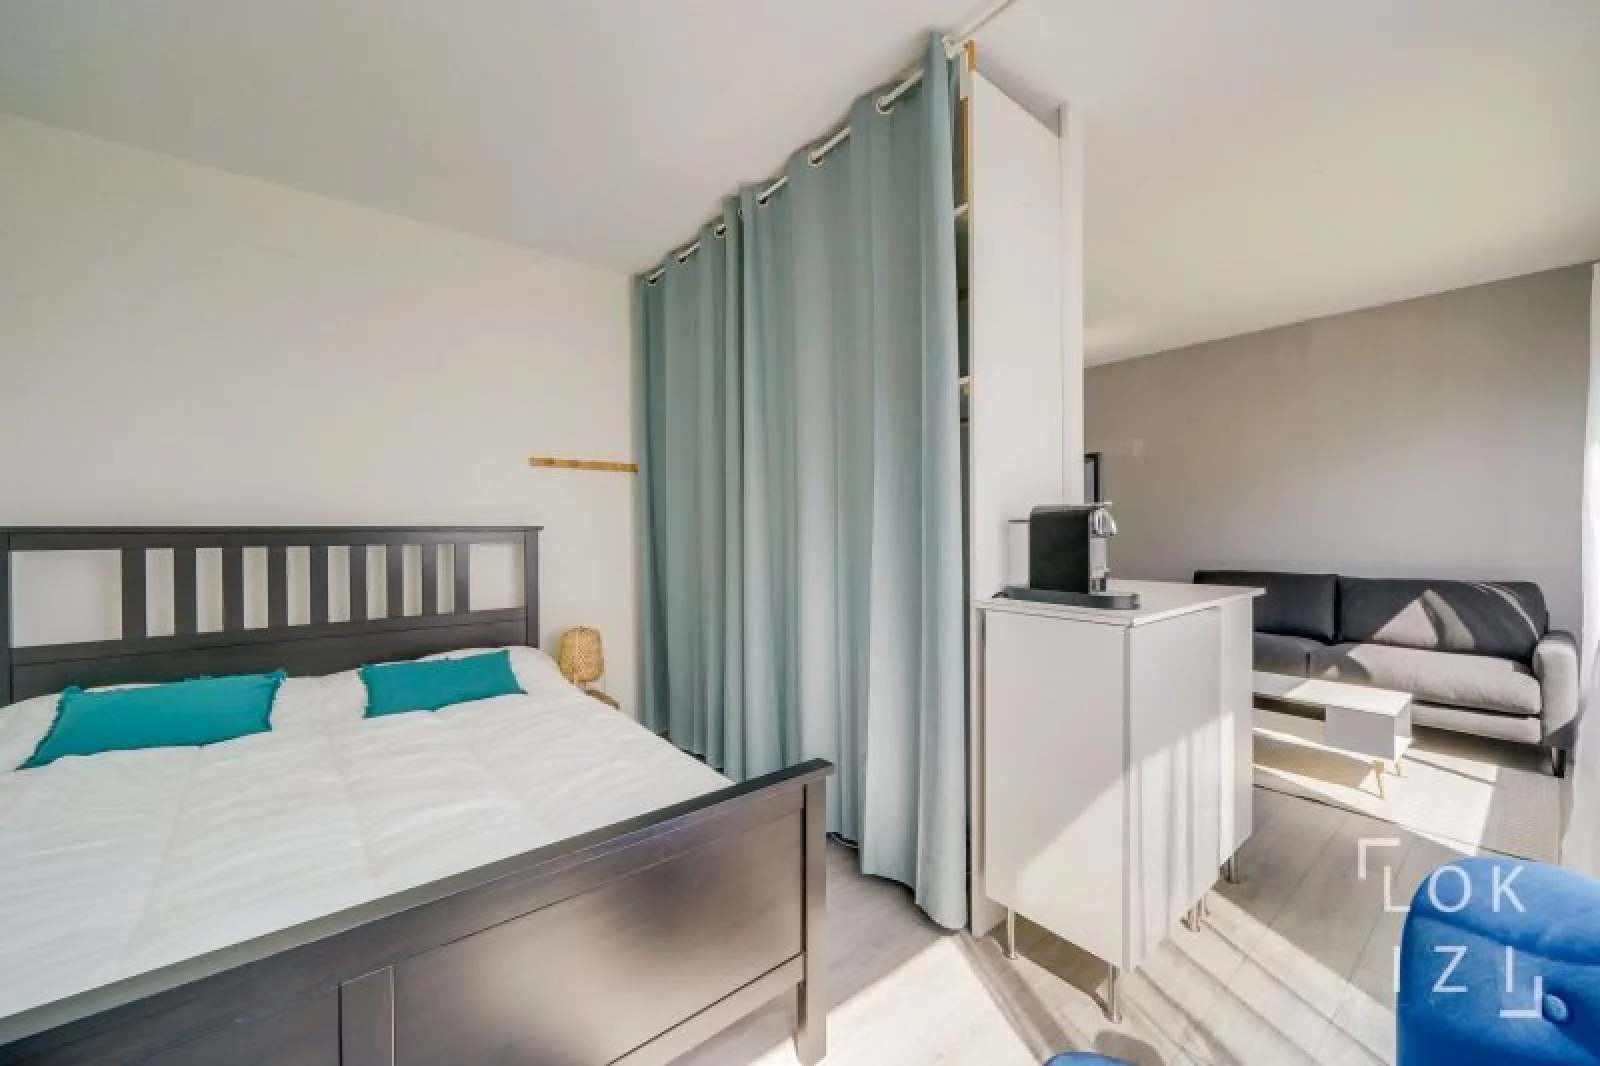 Location appartement meublé T1bis 29m² (Bordeaux - Caudéran)